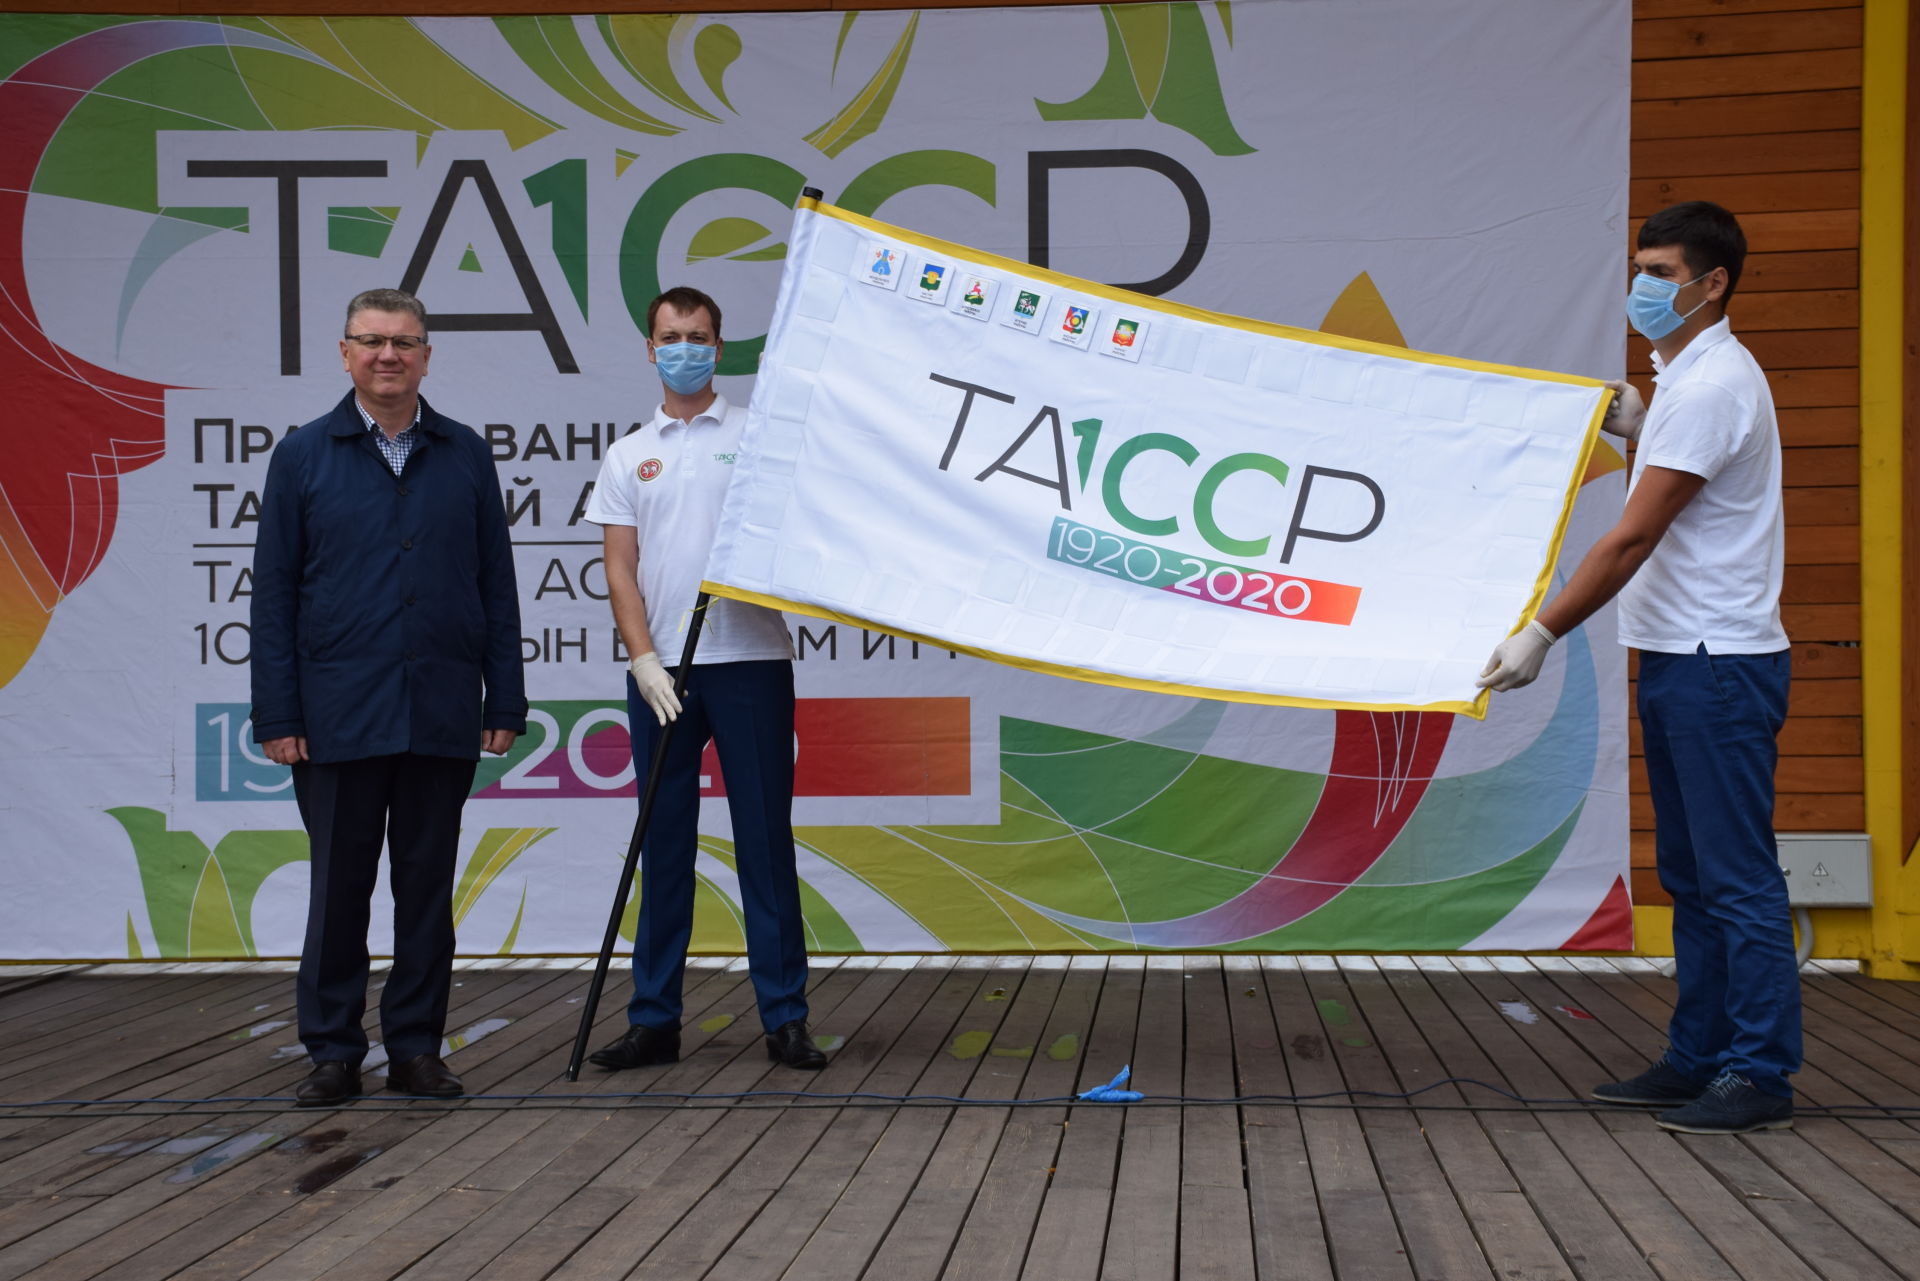 Нурлат принял эстафету флага 100-летия ТАССР